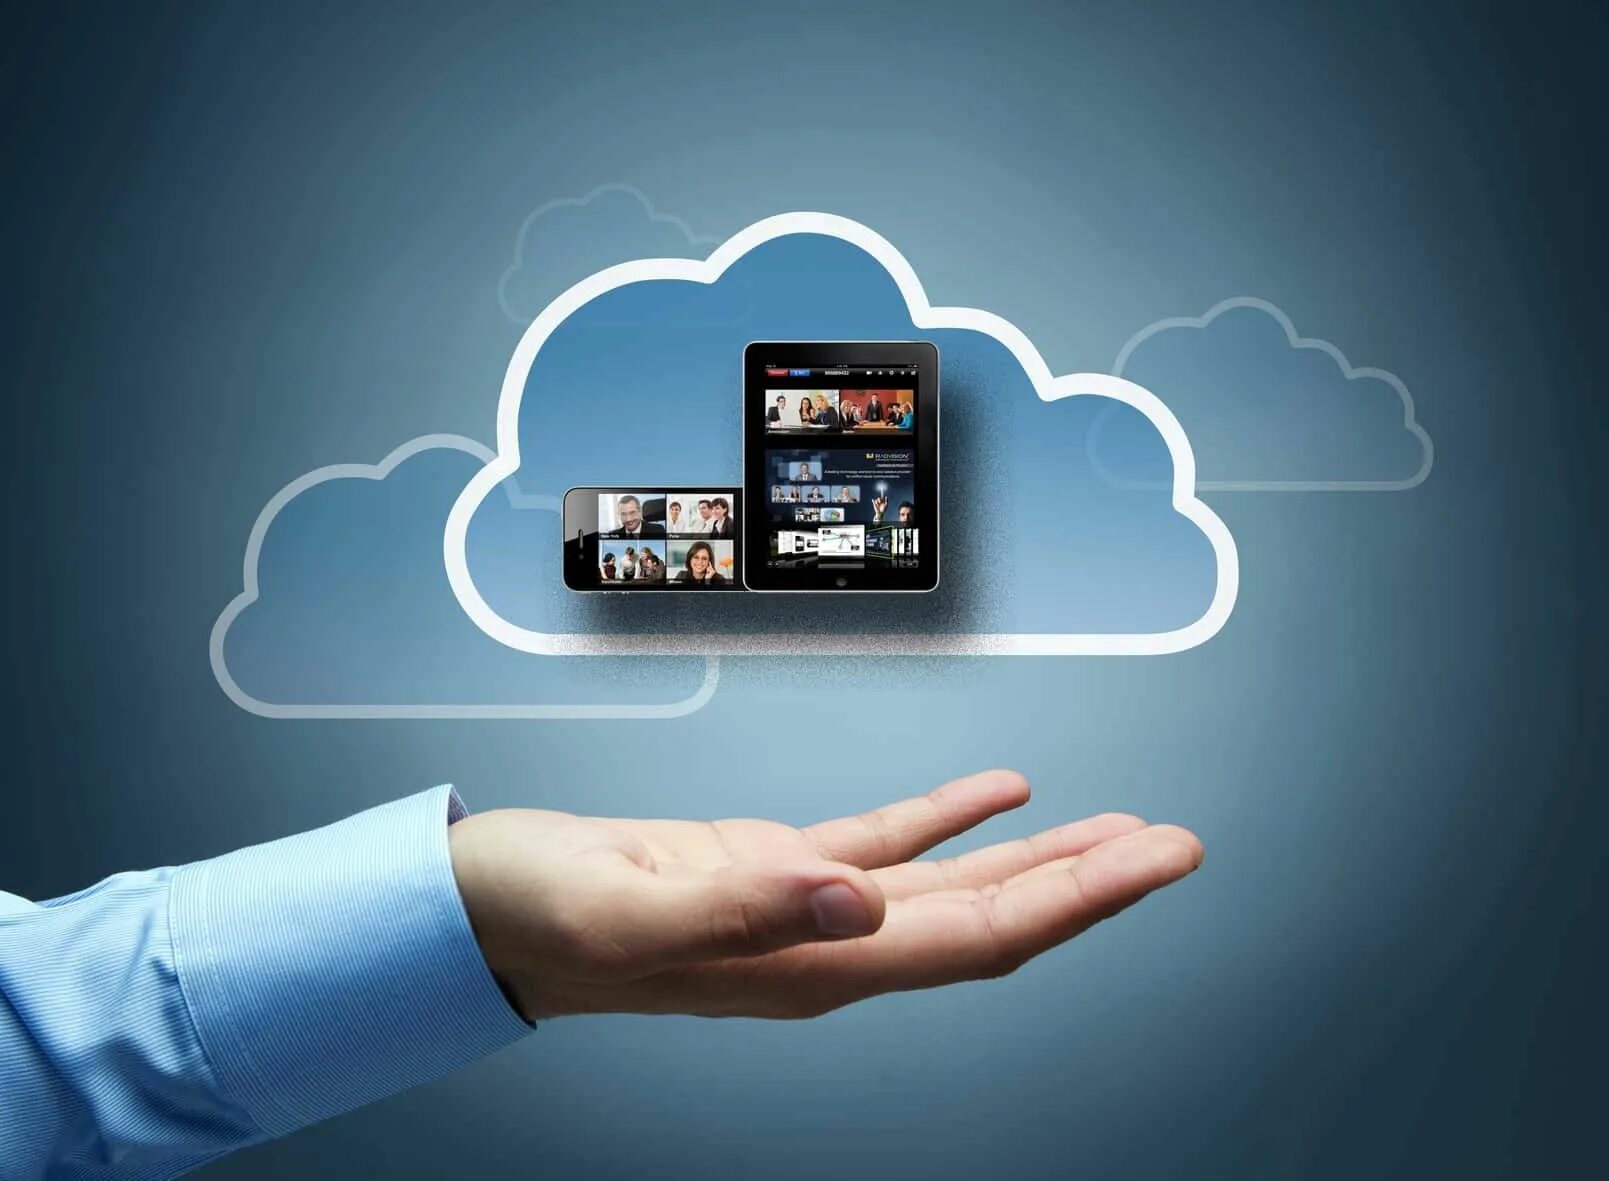 Streaming client. Облачные технологии. Преимущества облачных вычислений. Реклама облачных технологий. Мобильные и облачные технологии.